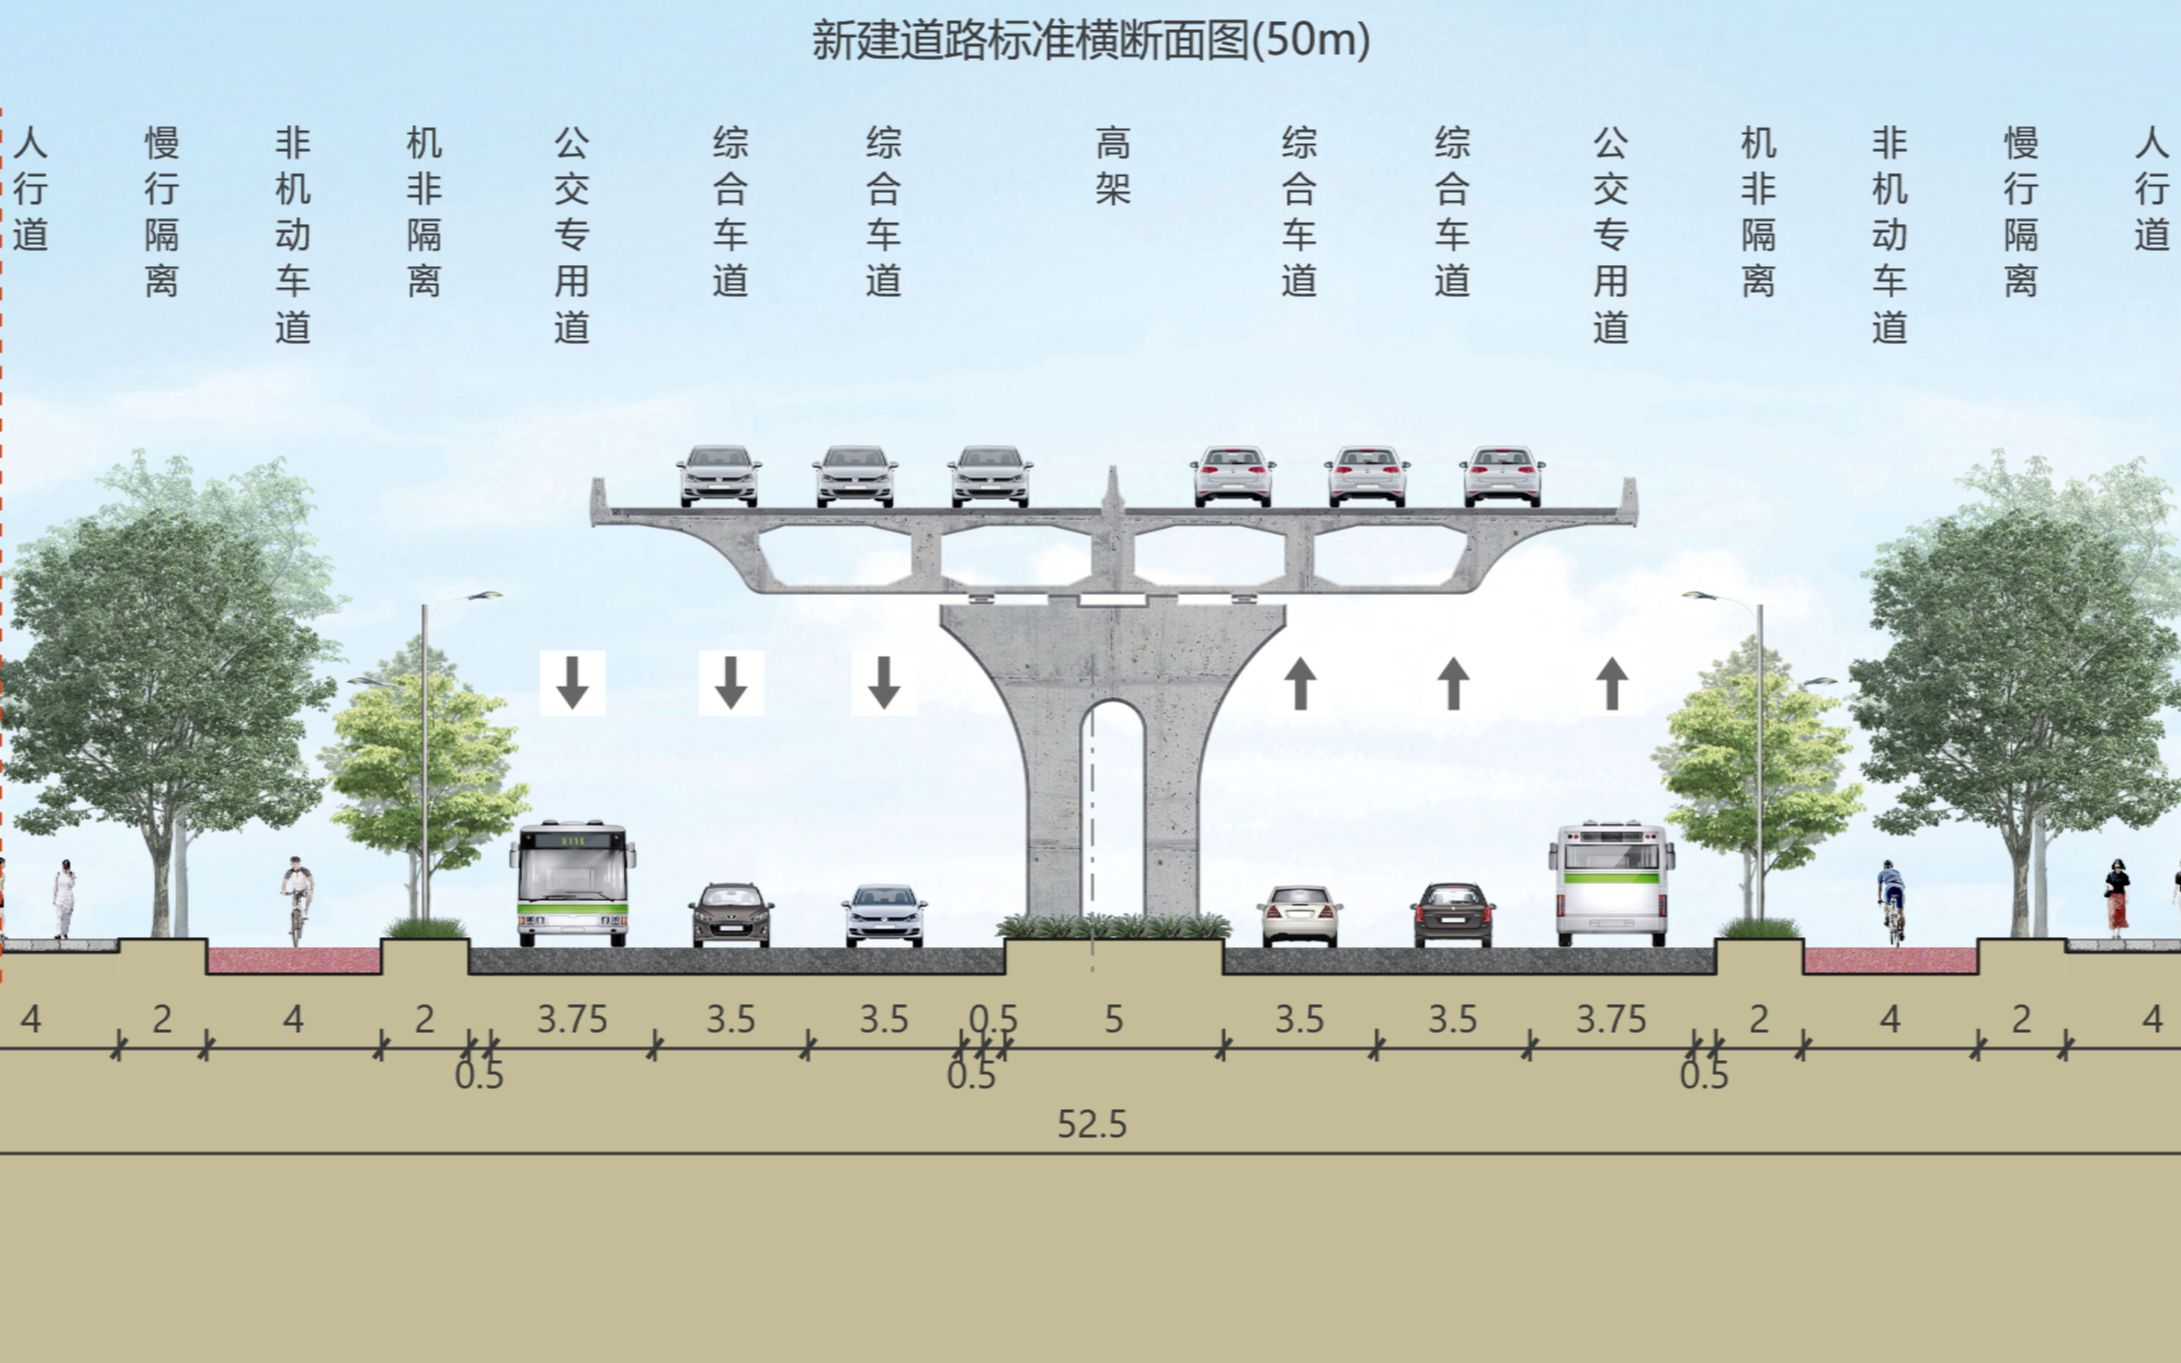 济安市政道路横断面图绘制渲染模板设计软件无水印免安装-淘宝网